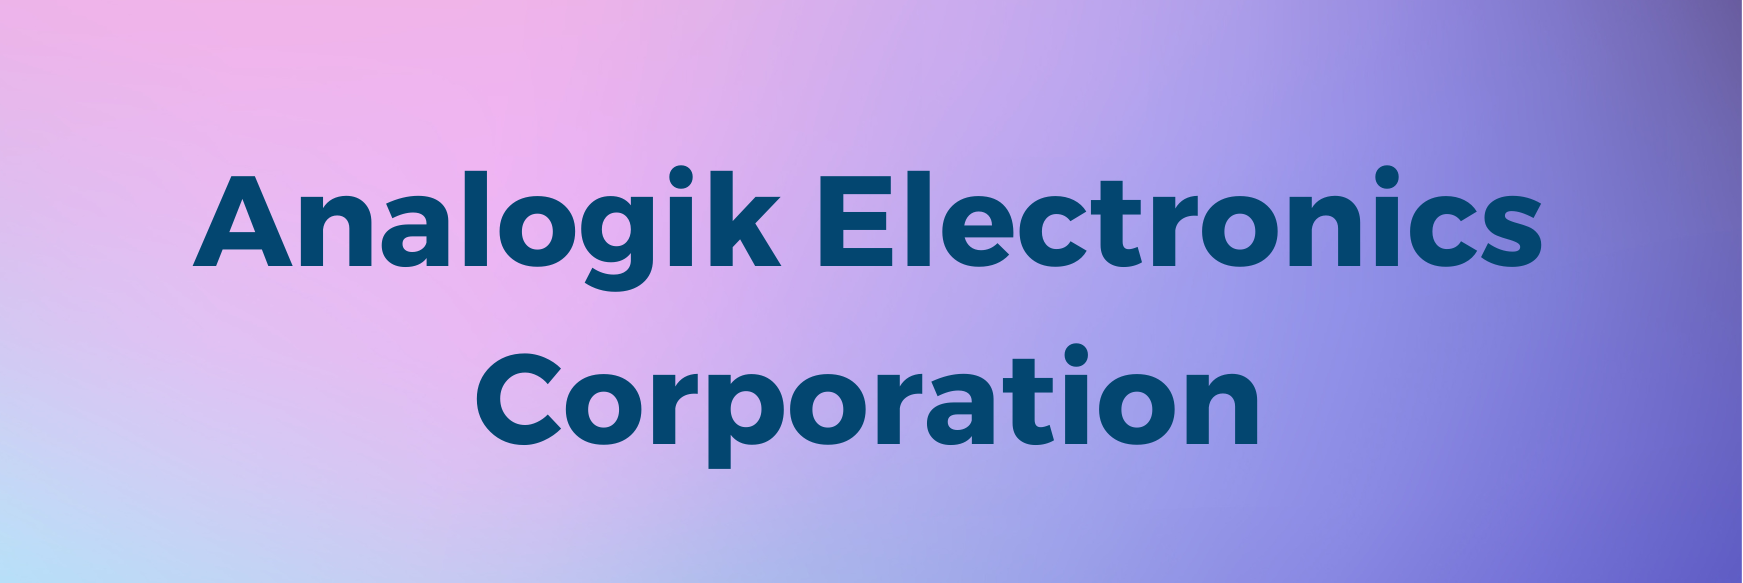 Analogik Electronics Corporation.